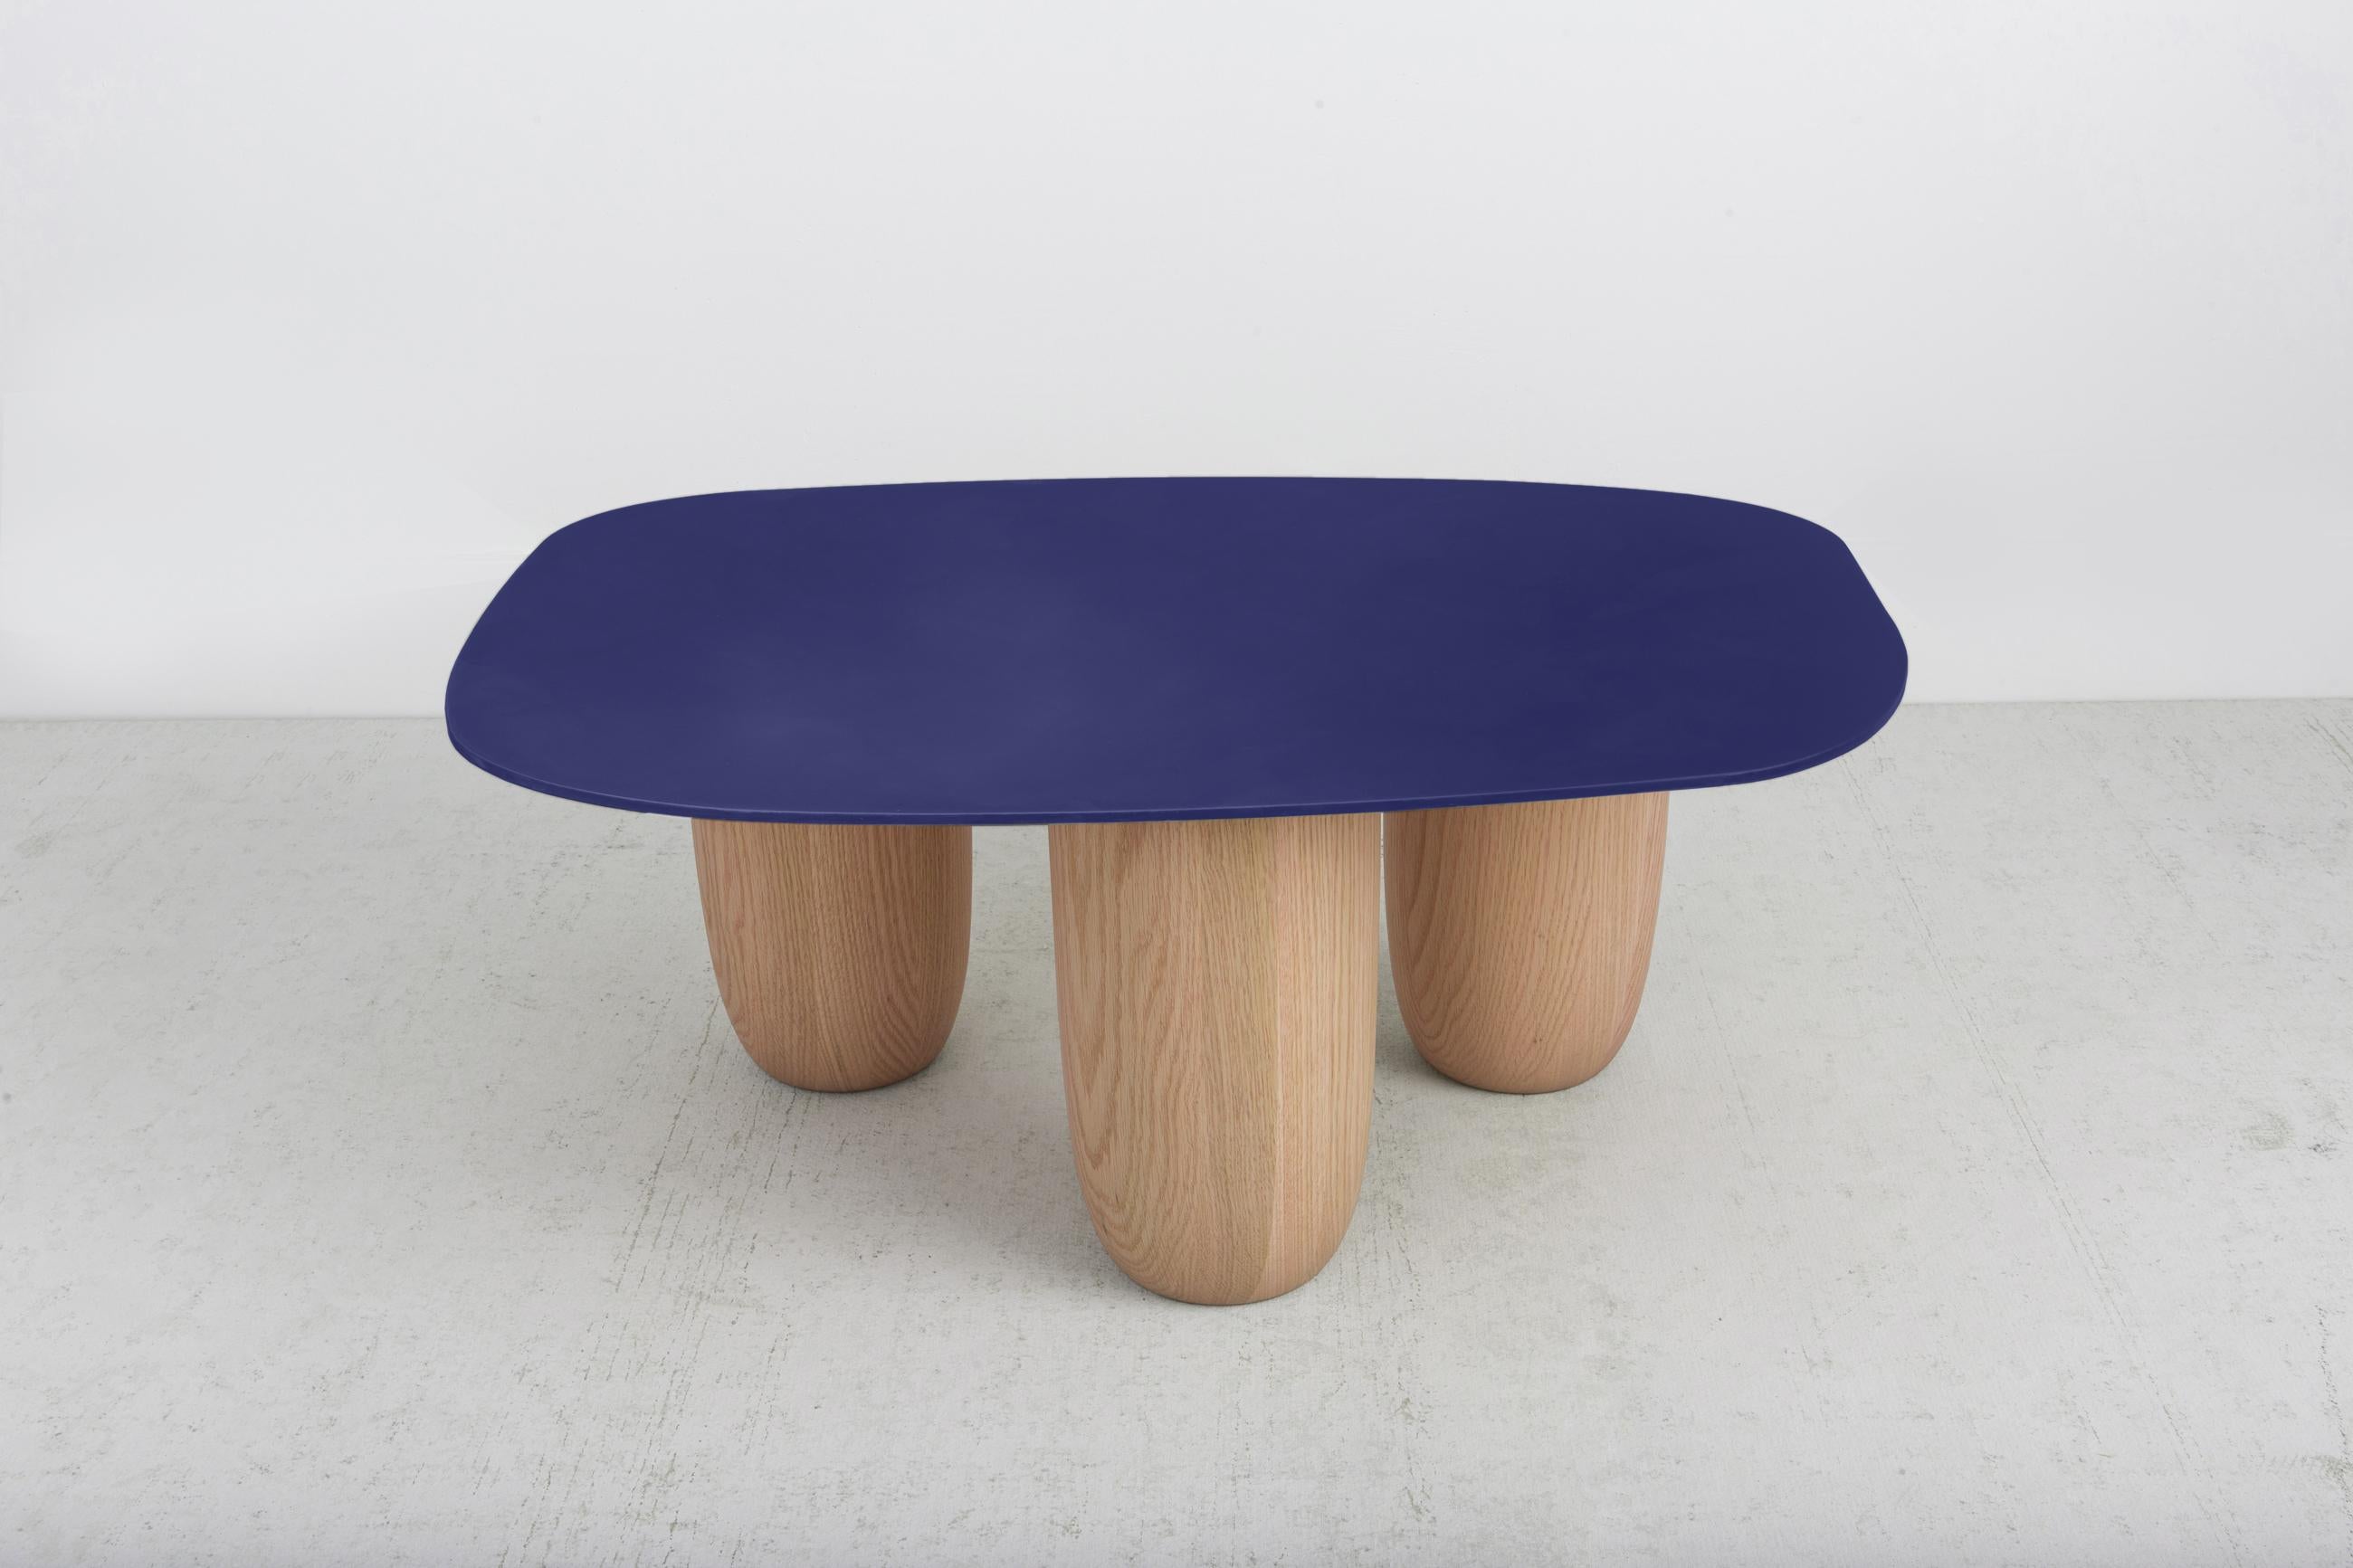 Nos tables basses contemporaines Steele en acier et en chêne massif sont désormais proposées dans différentes finitions. Les tables Sumo originales ont été présentées à l'occasion de Design Miami 2020. Ce design a été influencé par l'esthétique